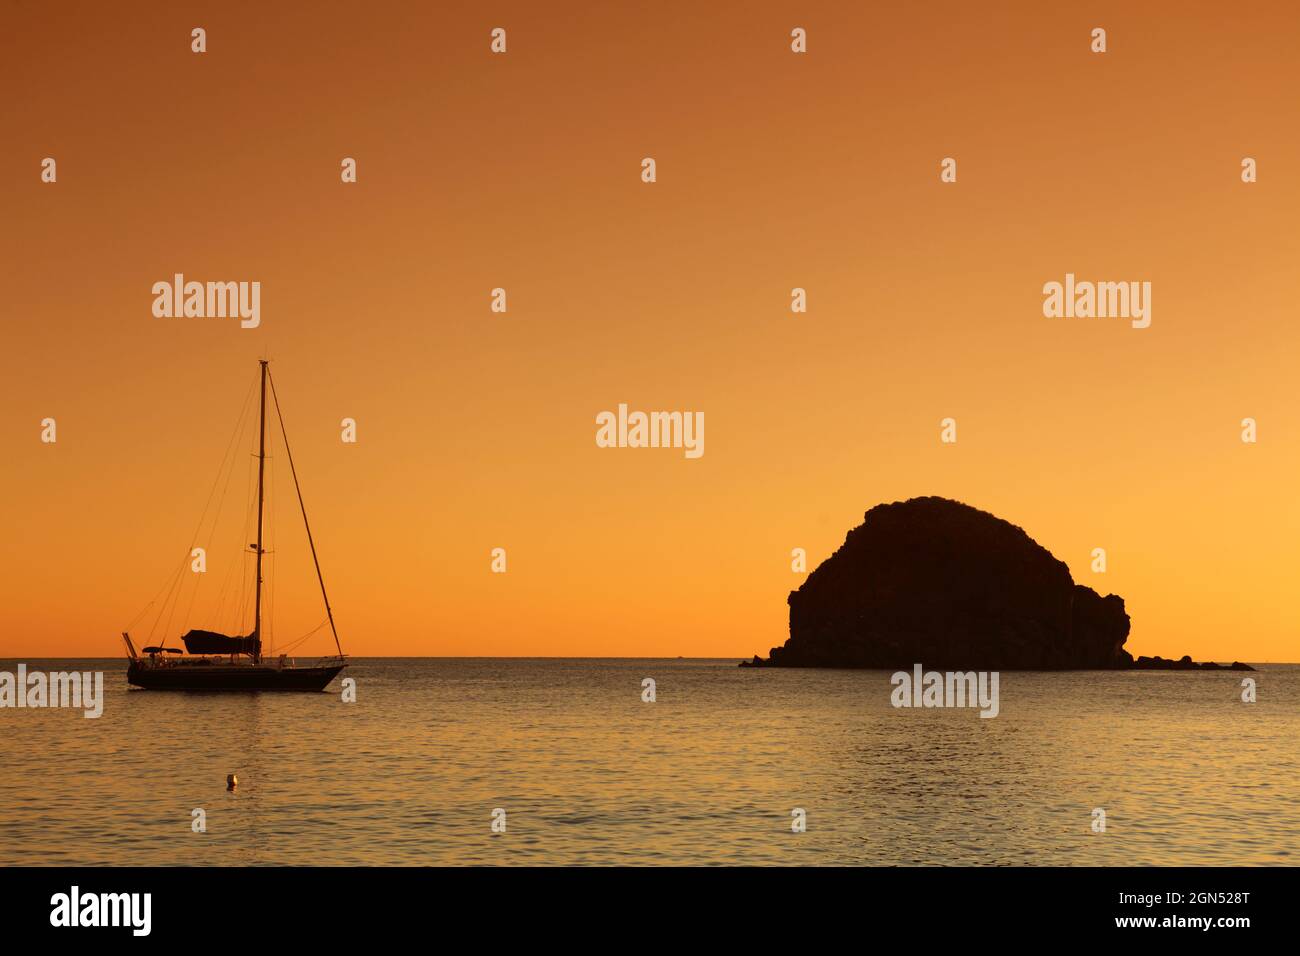 Pollara bay and Faraglione Rock, Salina, Aeolian islands, Sicily, Italy Stock Photo